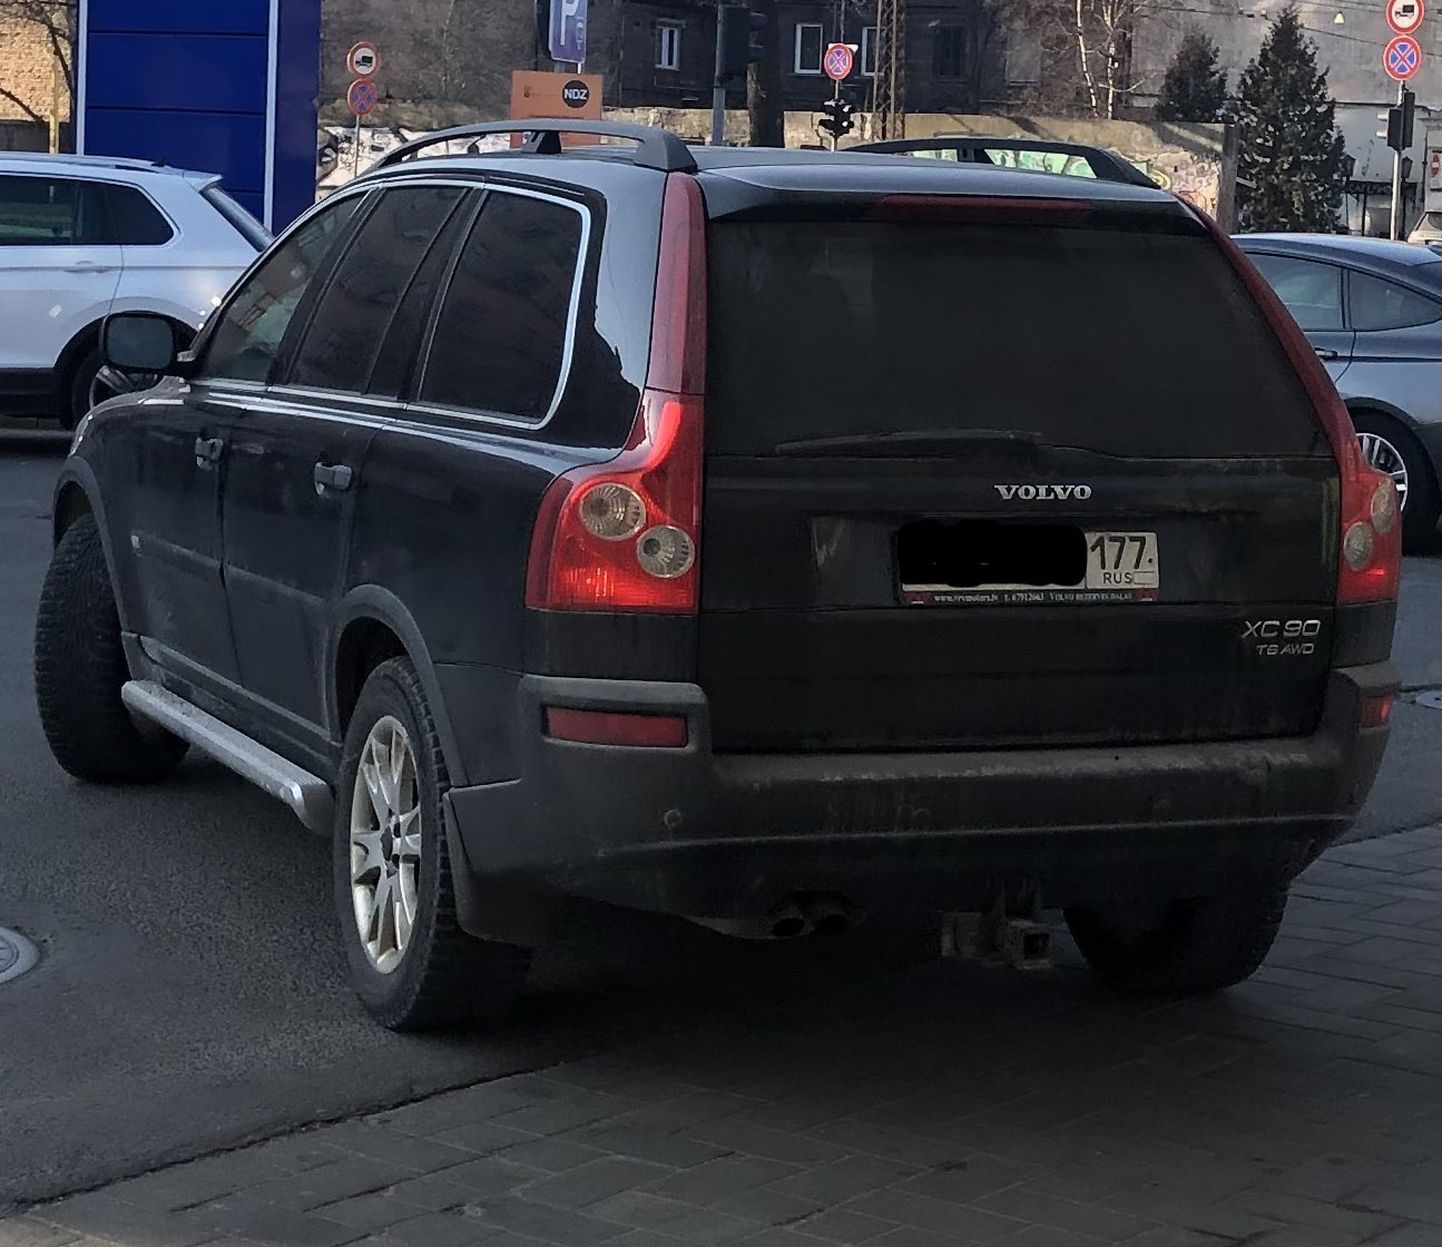 Vene numbrimärgiga sõiduautolt on kadunud riigilipp.